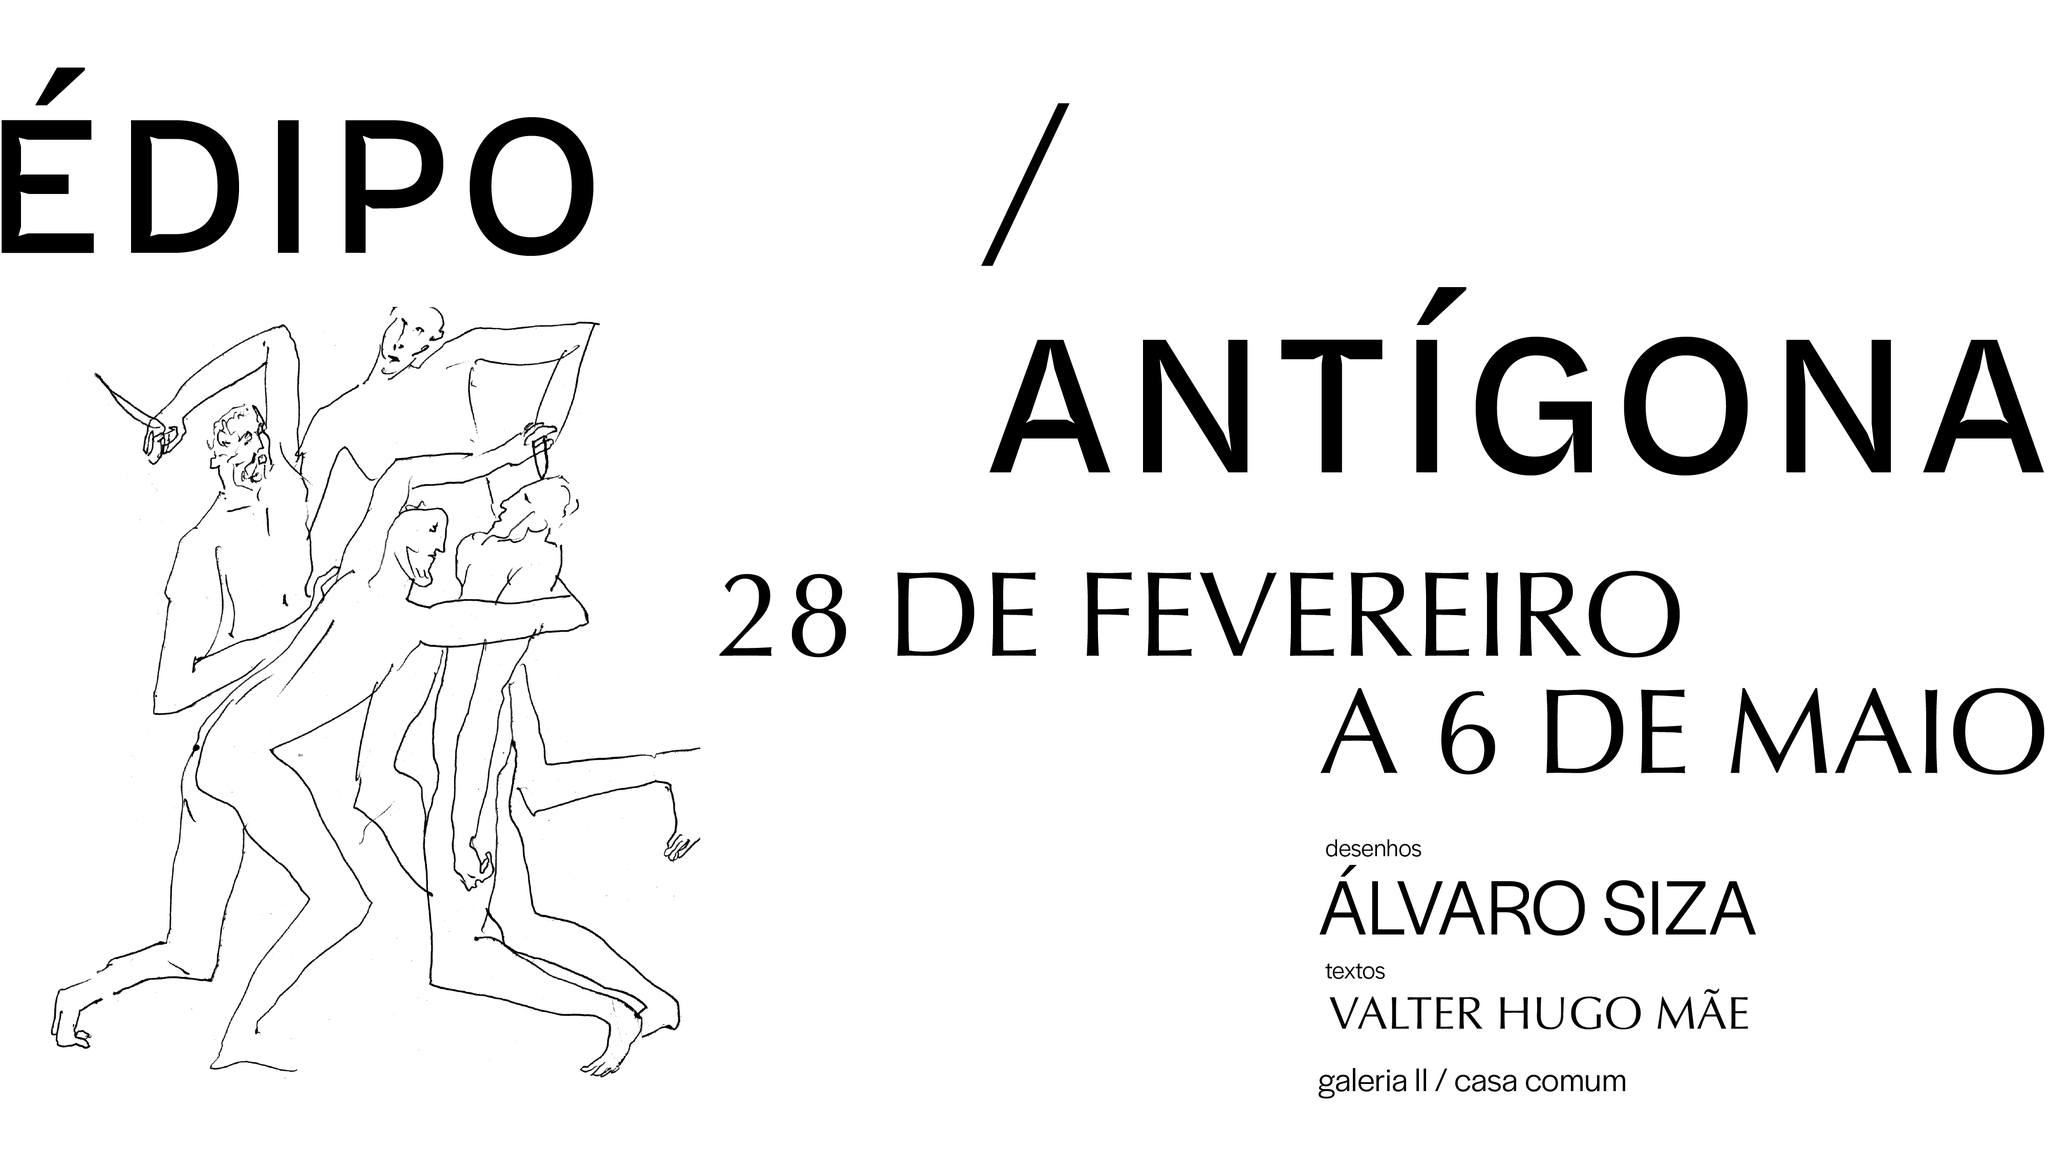 Édipo/Antígona - Desenhos de Siza Vieira com textos de Valter Hugo Mãe